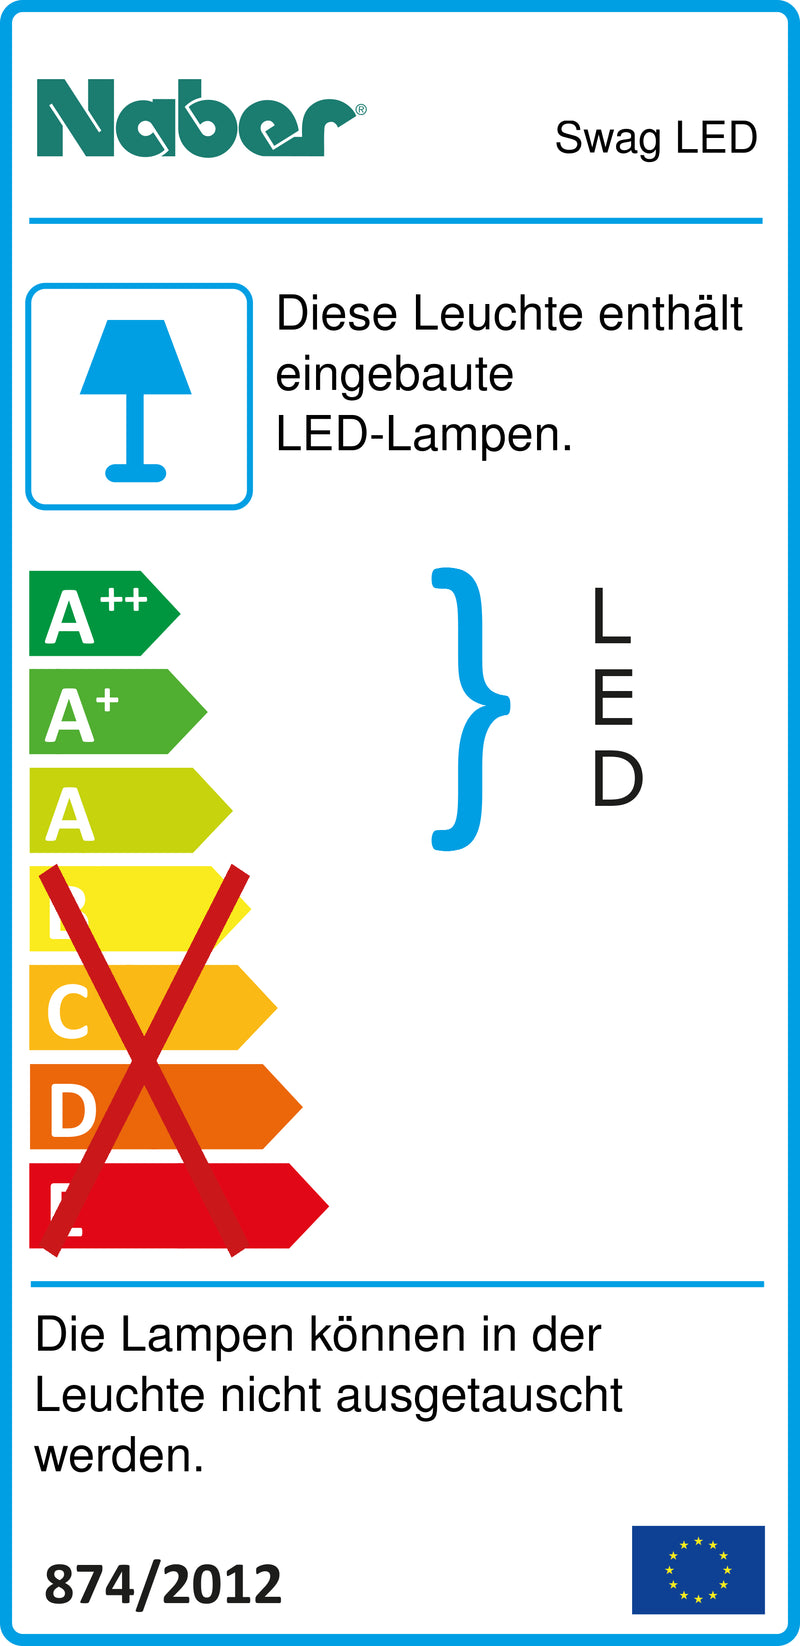 E-Label zu Zeichnung zu Swag LED als Variante Set-3, 4000 K neutralweiß von Naber GmbH in der Kategorie Lichttechnik in Österreich auf conceptshop.at